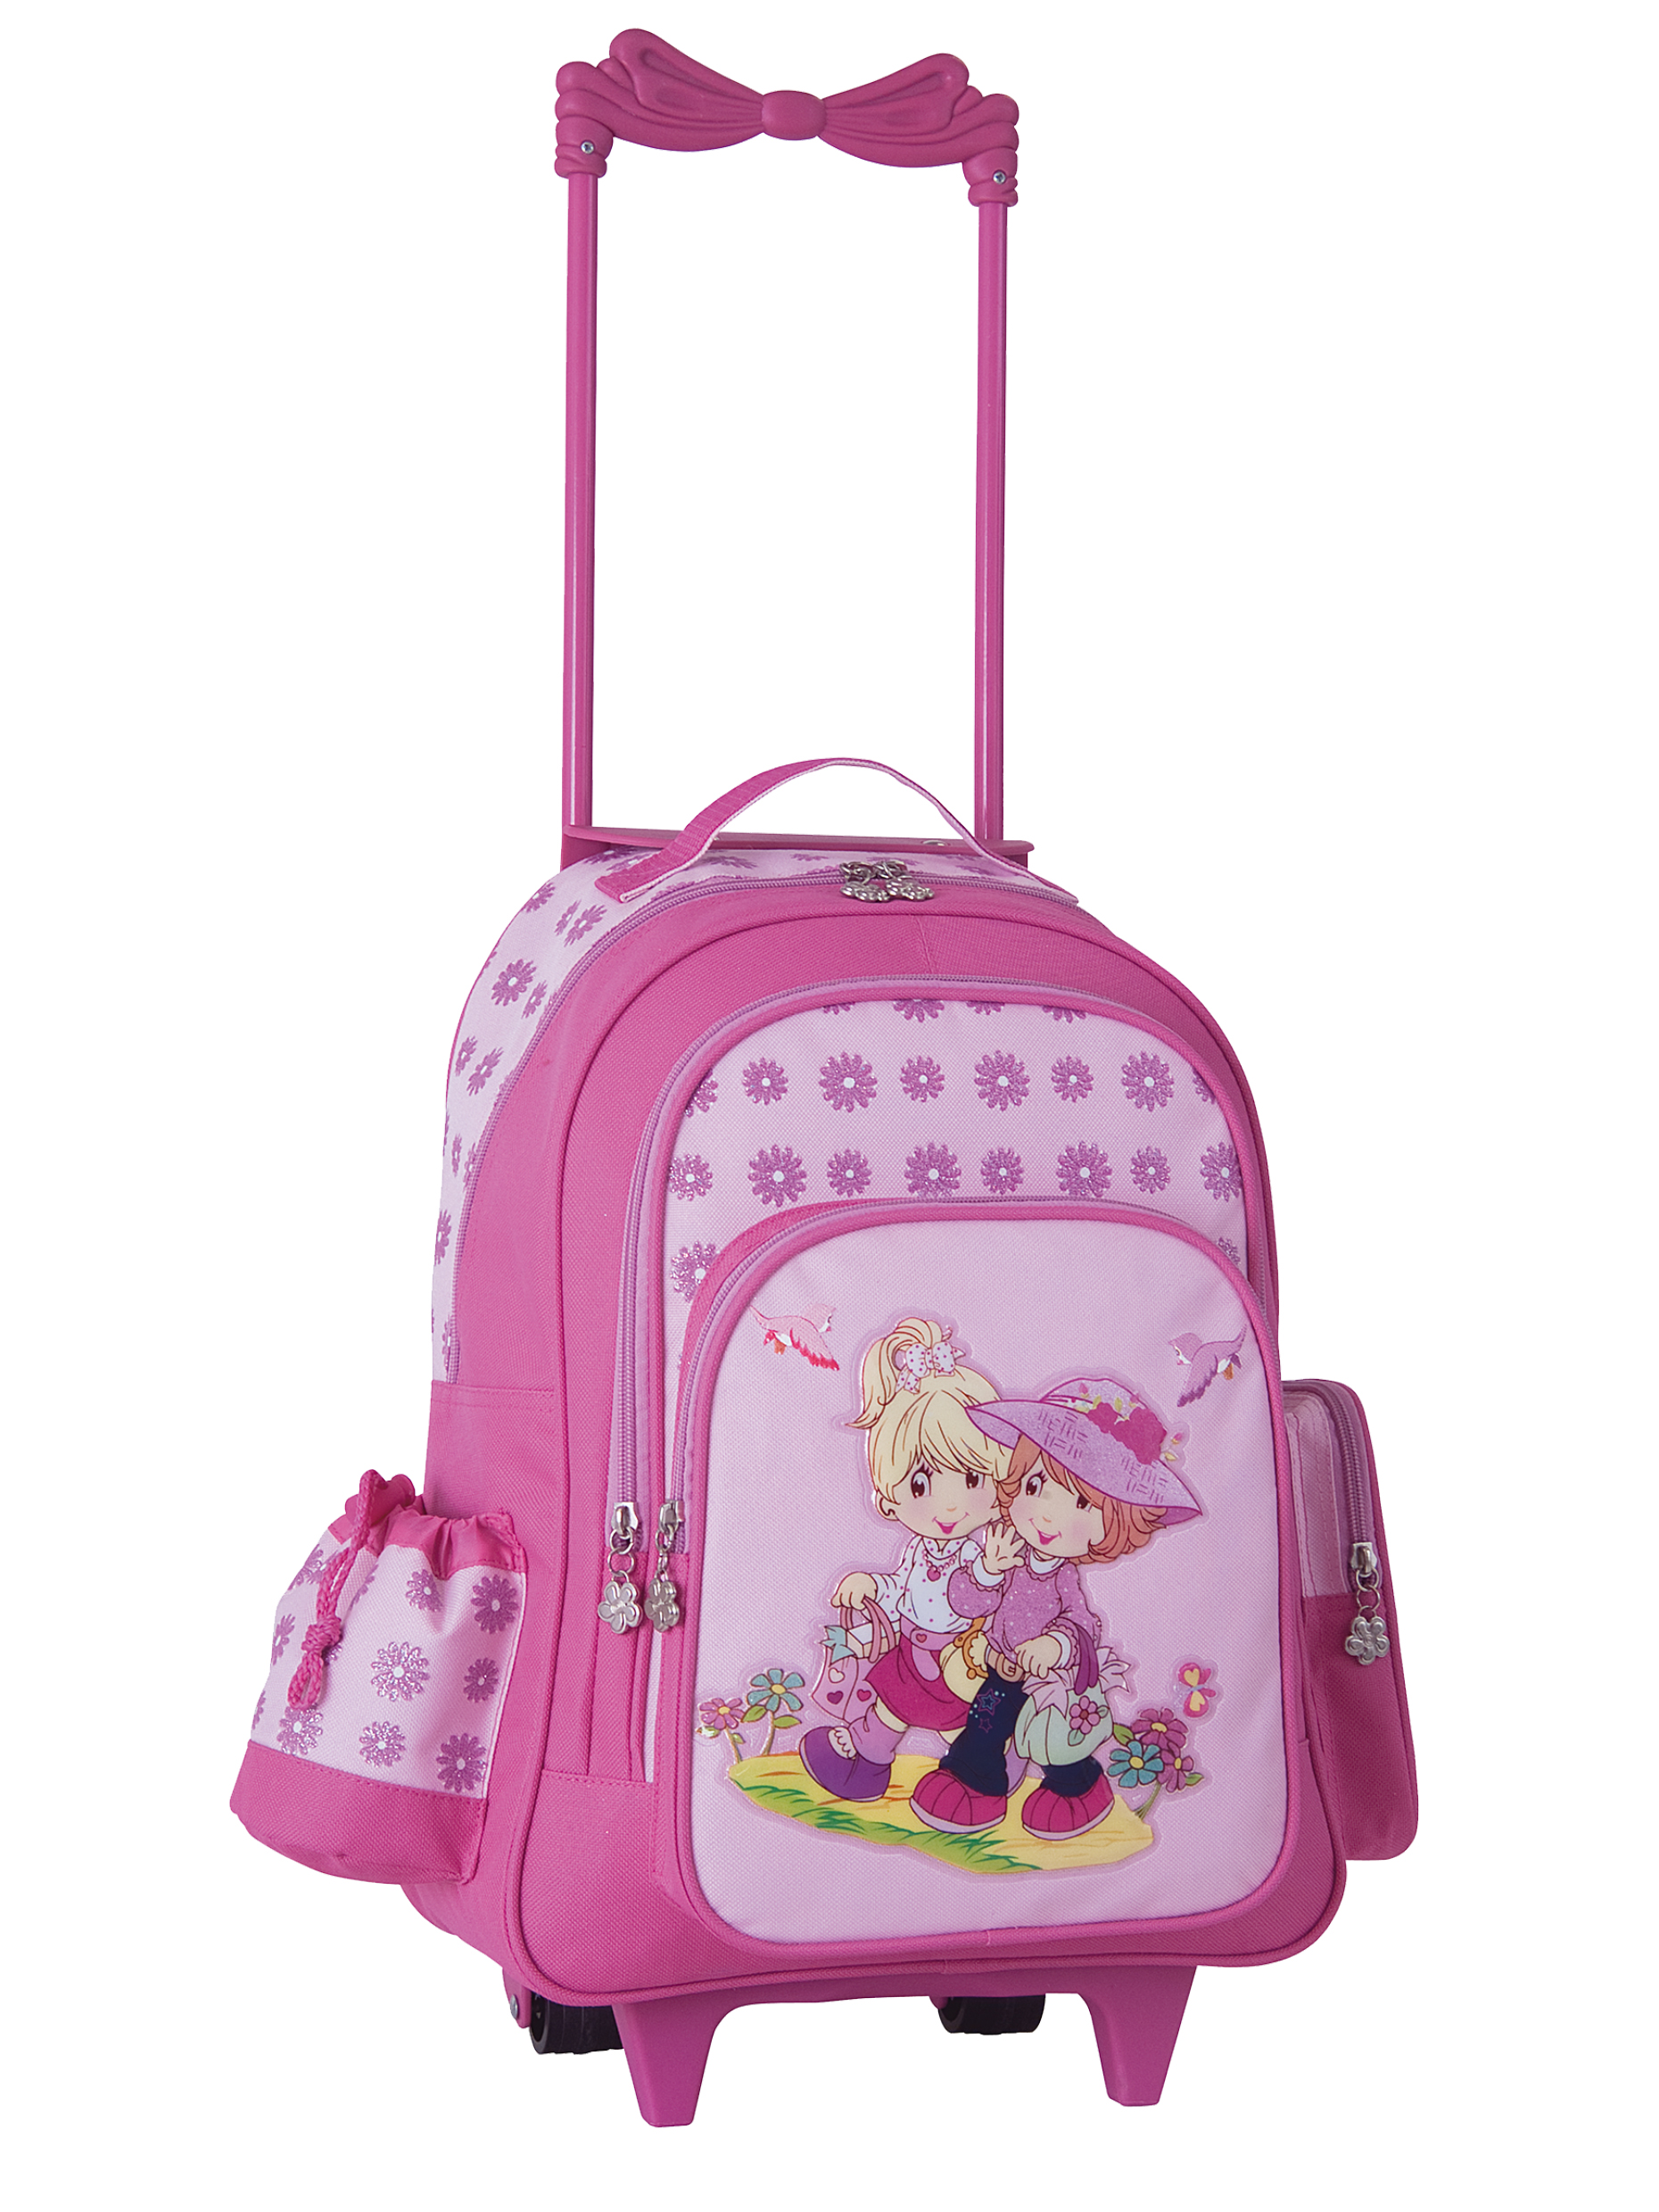 Trolley für Kinder von Stefano mit Motiv Mädchen in pink - 1301-47-80